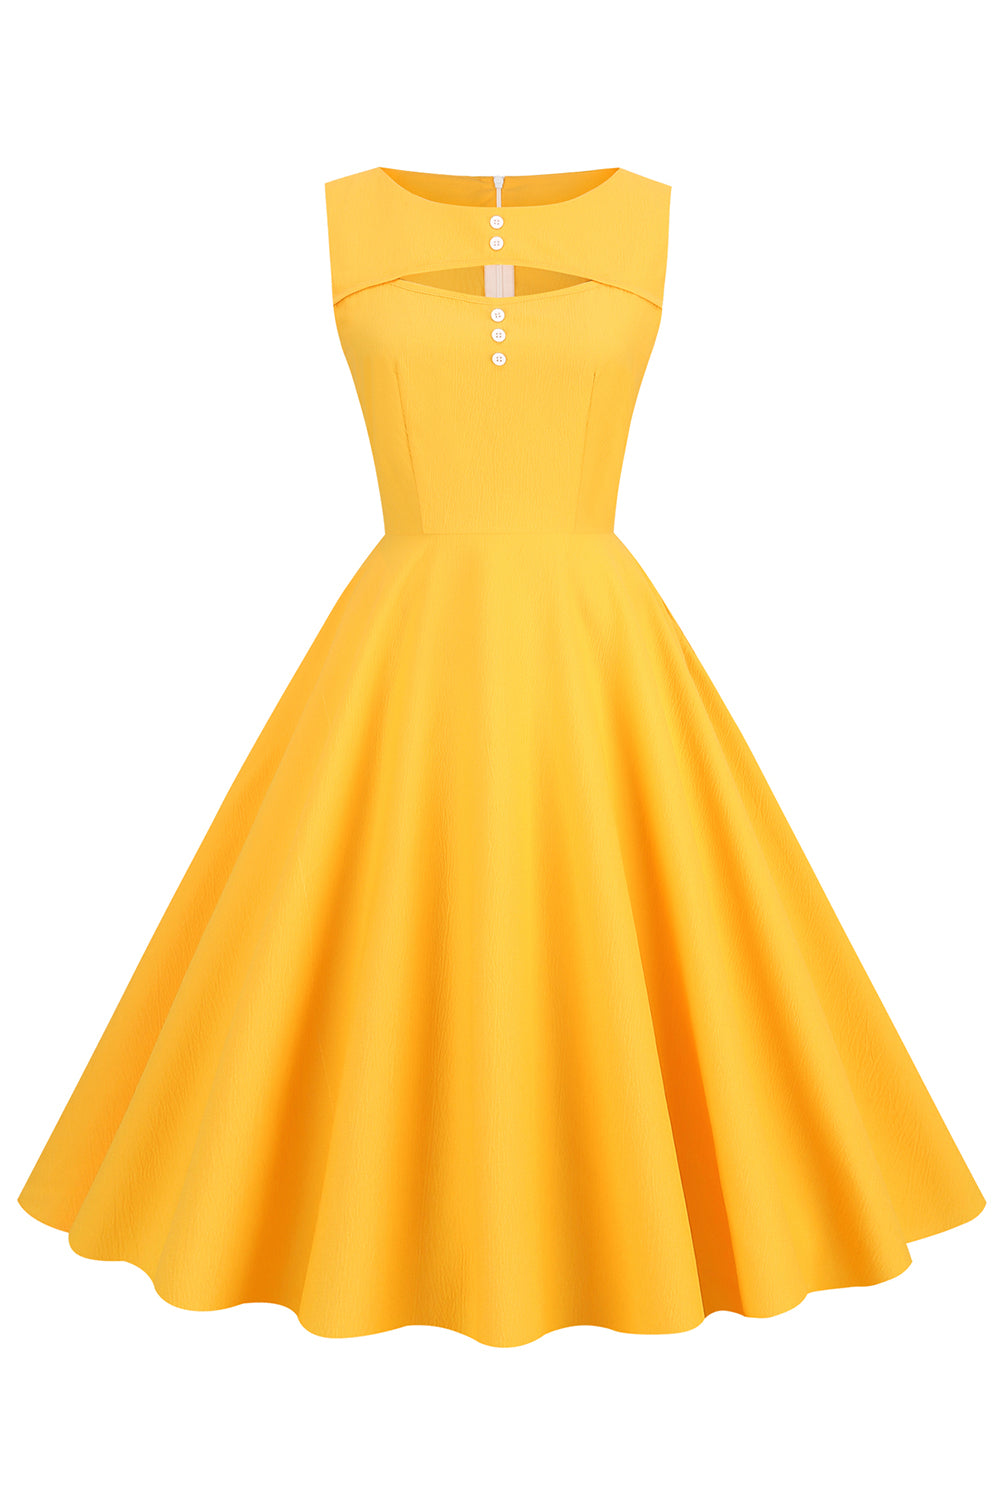 robe-de-style-retro-jaune-des-annees-50-avec-trou-de-serrure